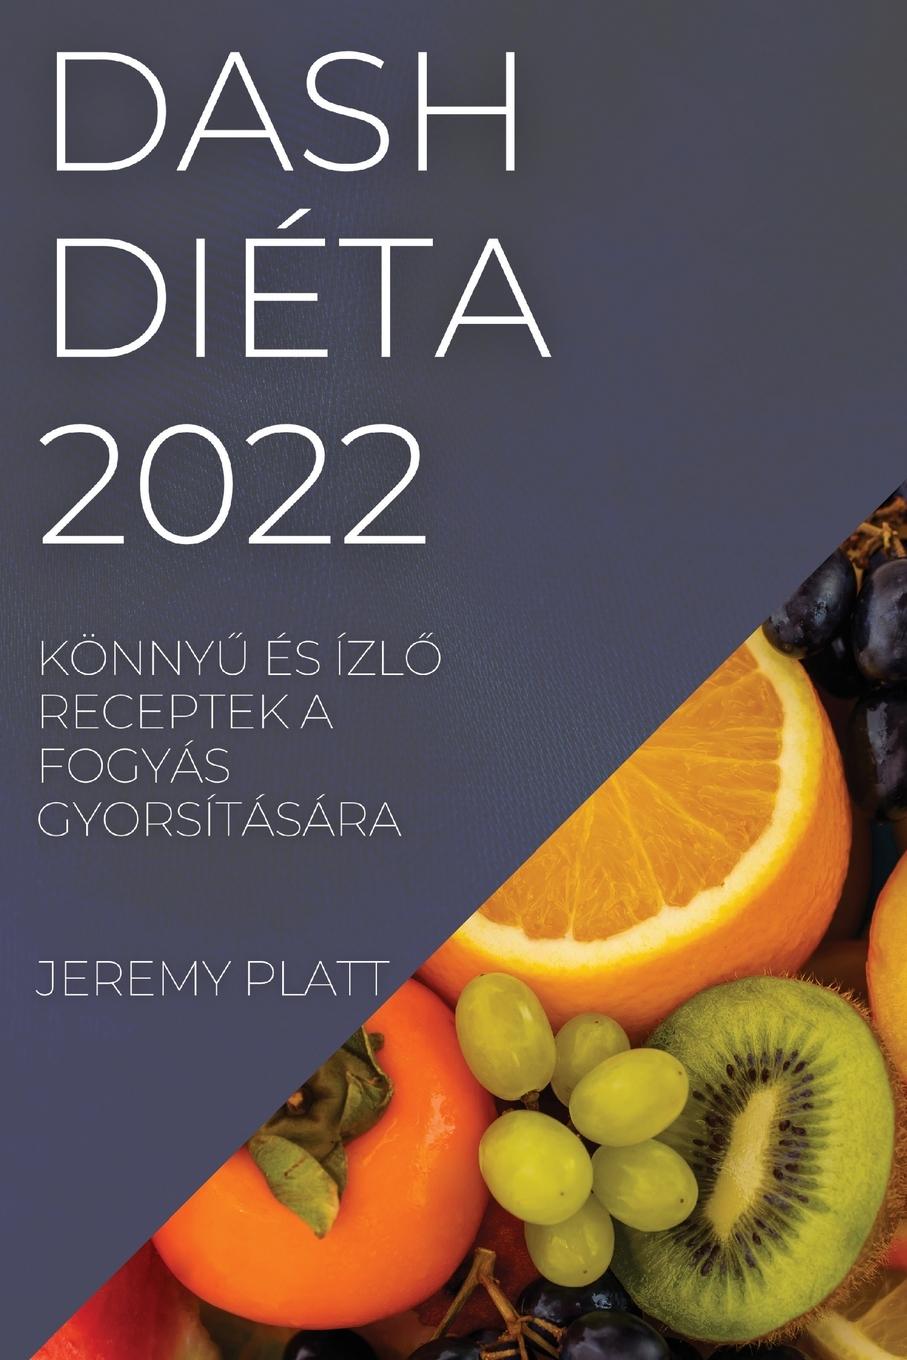 Book Dash Dieta 2022 